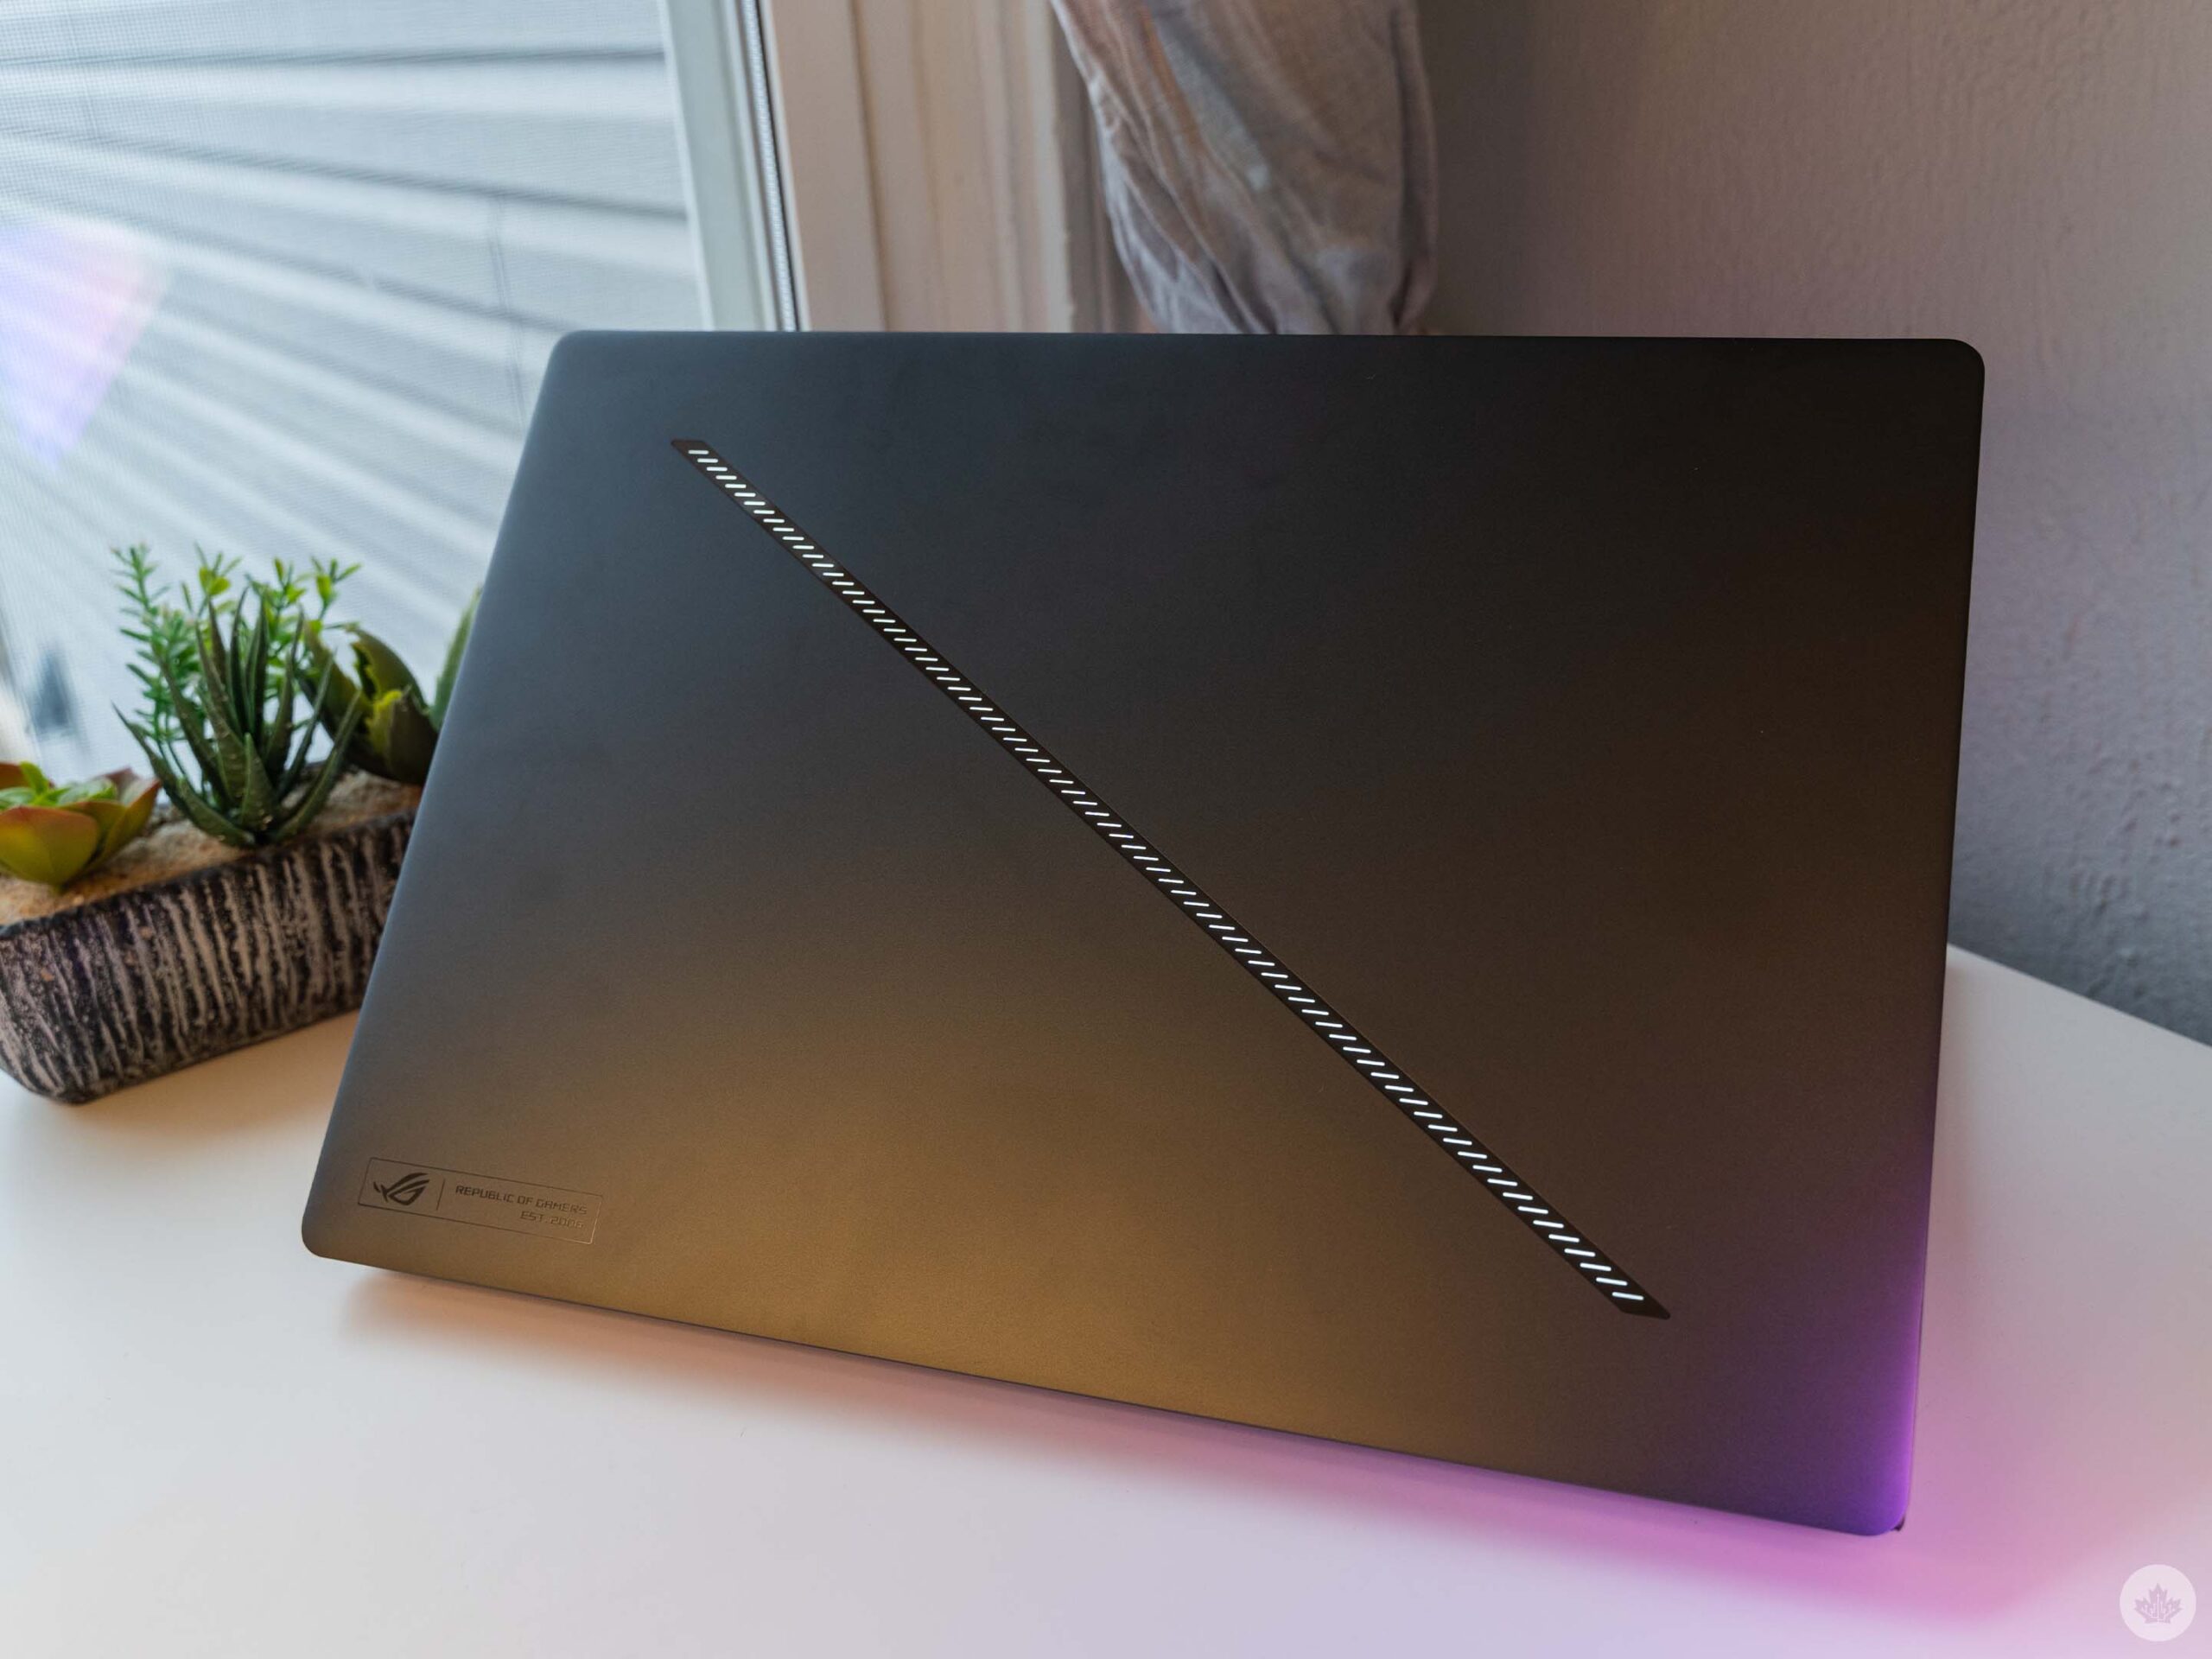 Zephyrus G16 laptop's Slash Lighting feature.